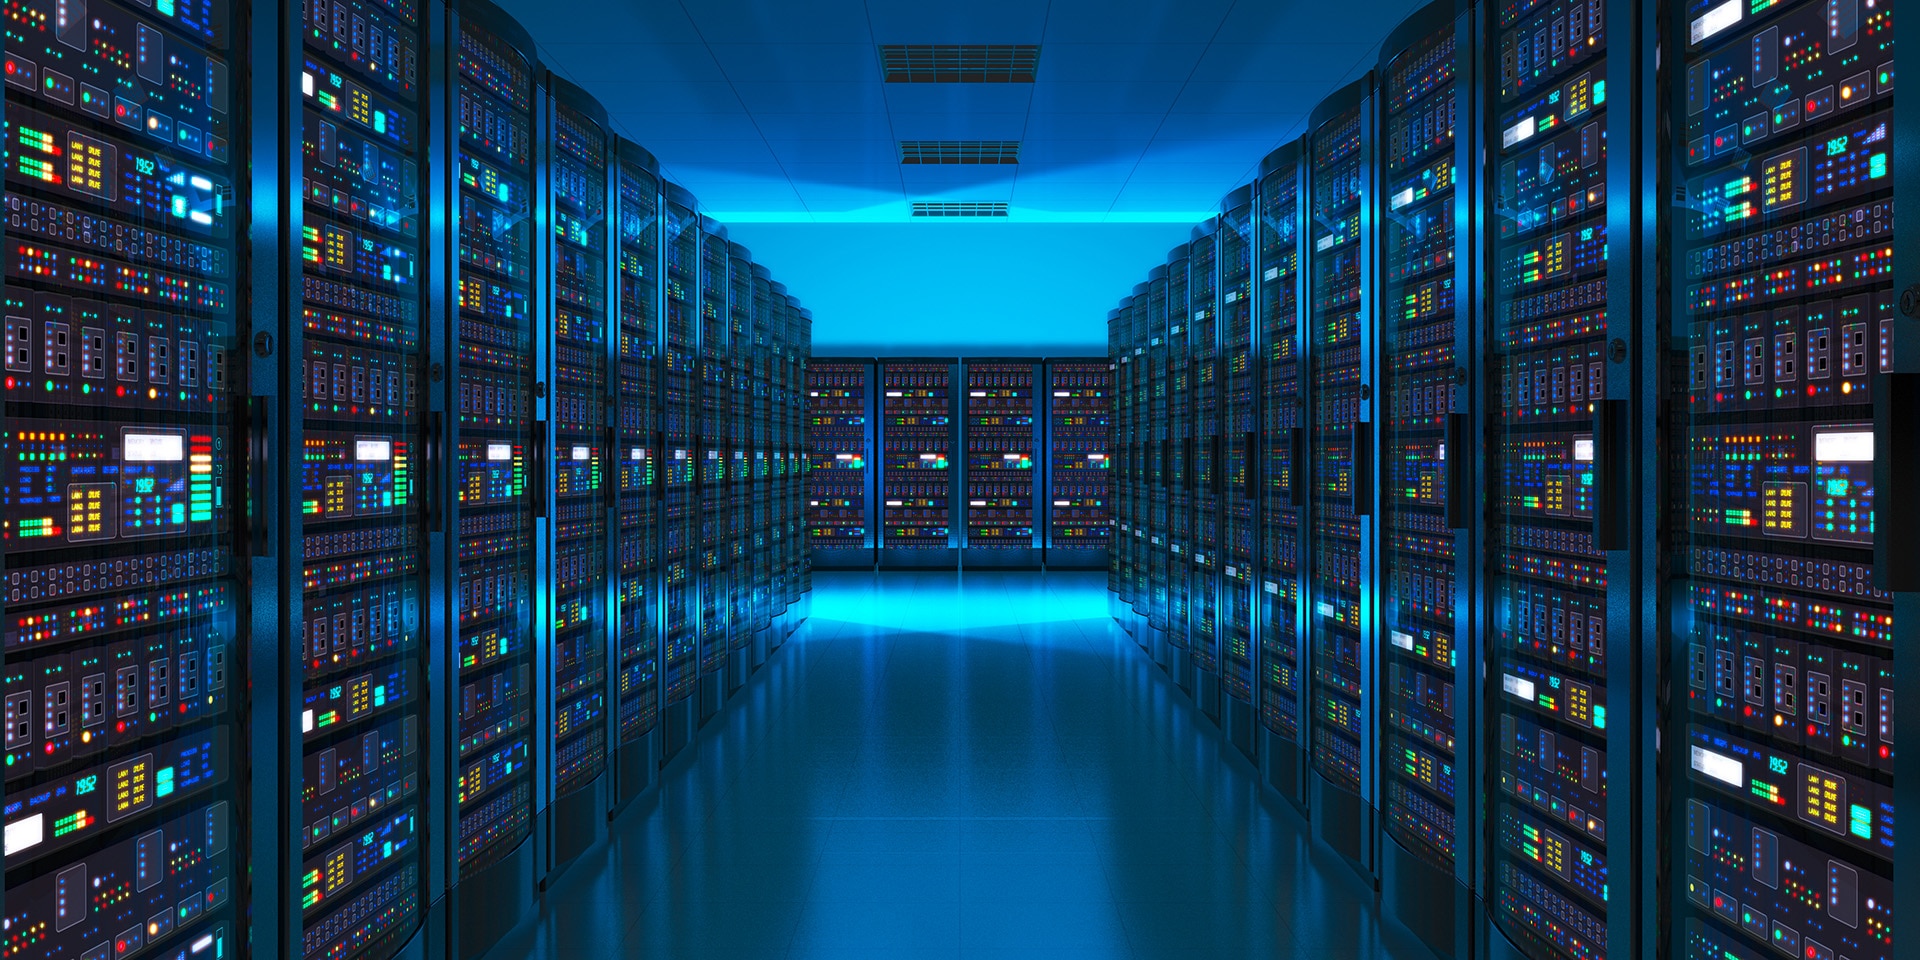 In einem dunklen, blau beleuchteten Raum stehen lange Reihen von Servern, in denen digitale Daten gespeichert sind.